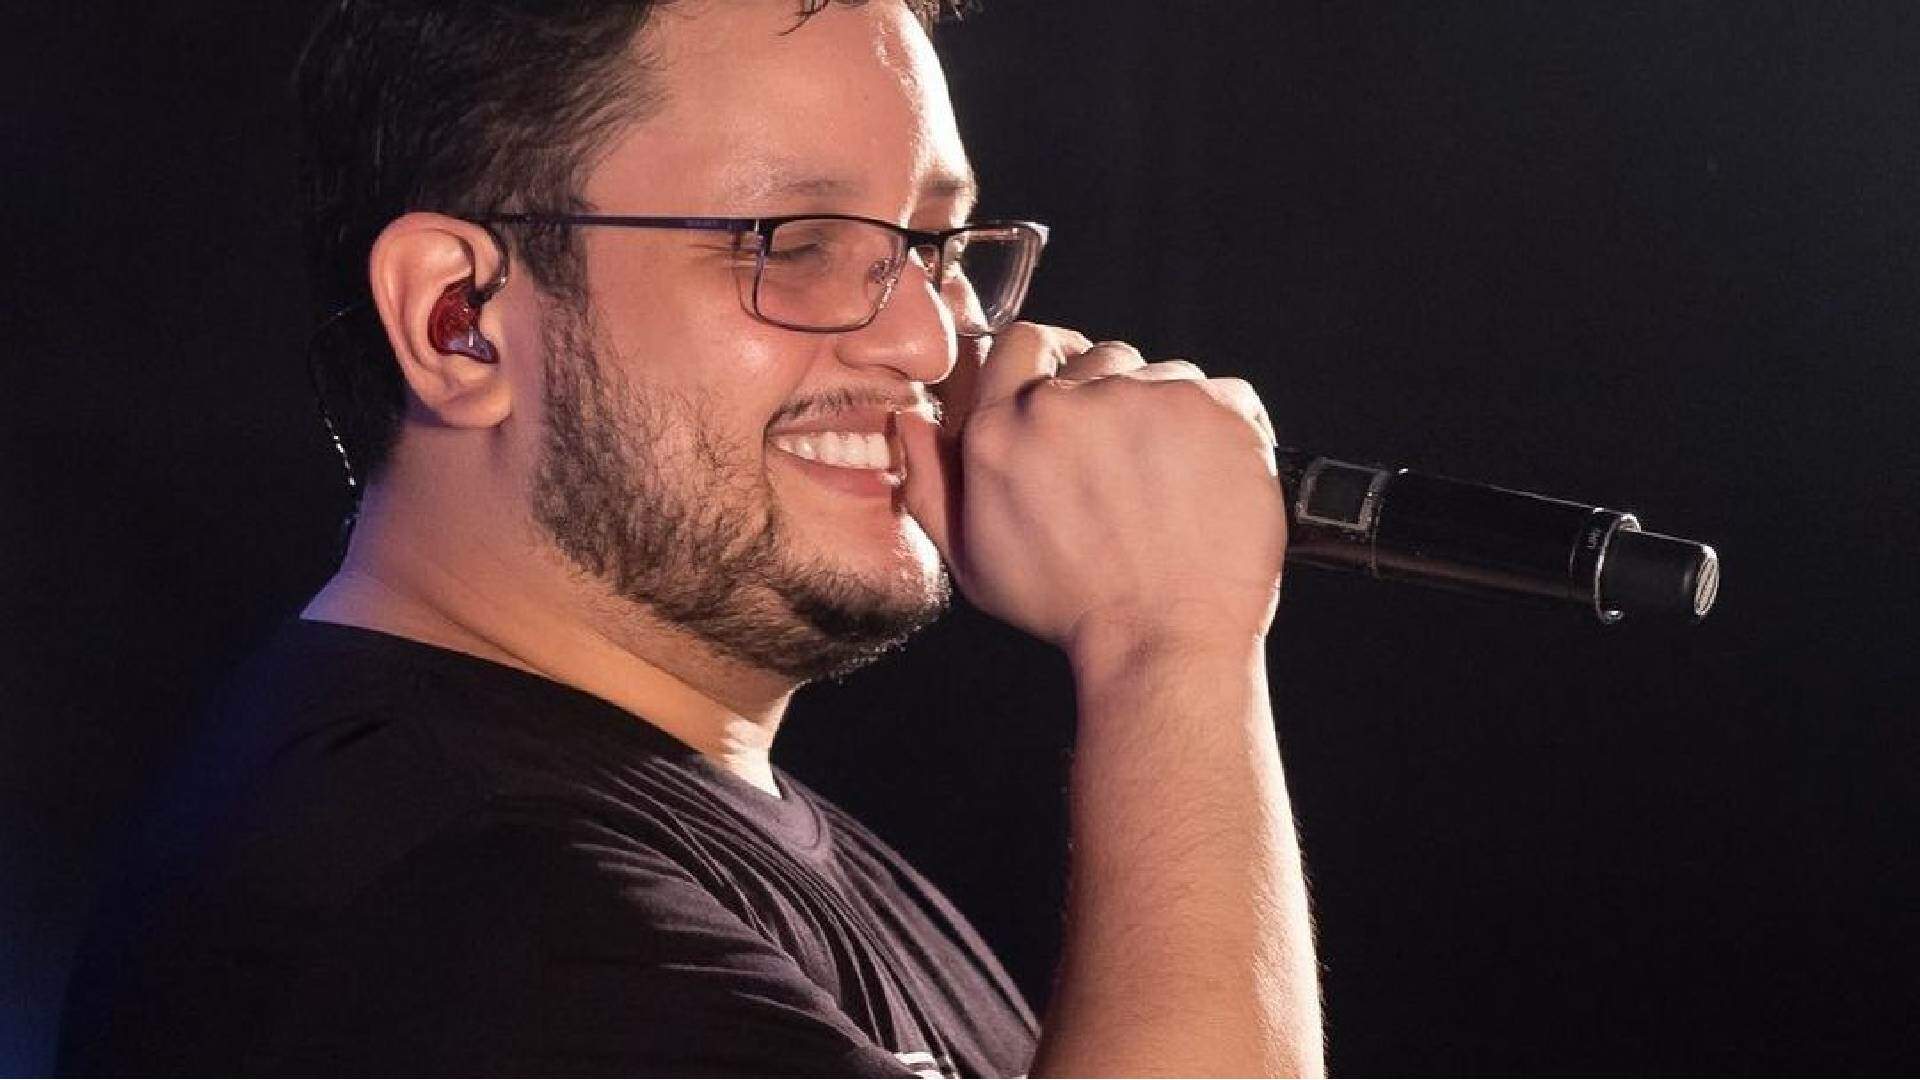 Cantores e famosos lamentam morte do cantor Maurílio: “Que perda!” - Metropolitana FM